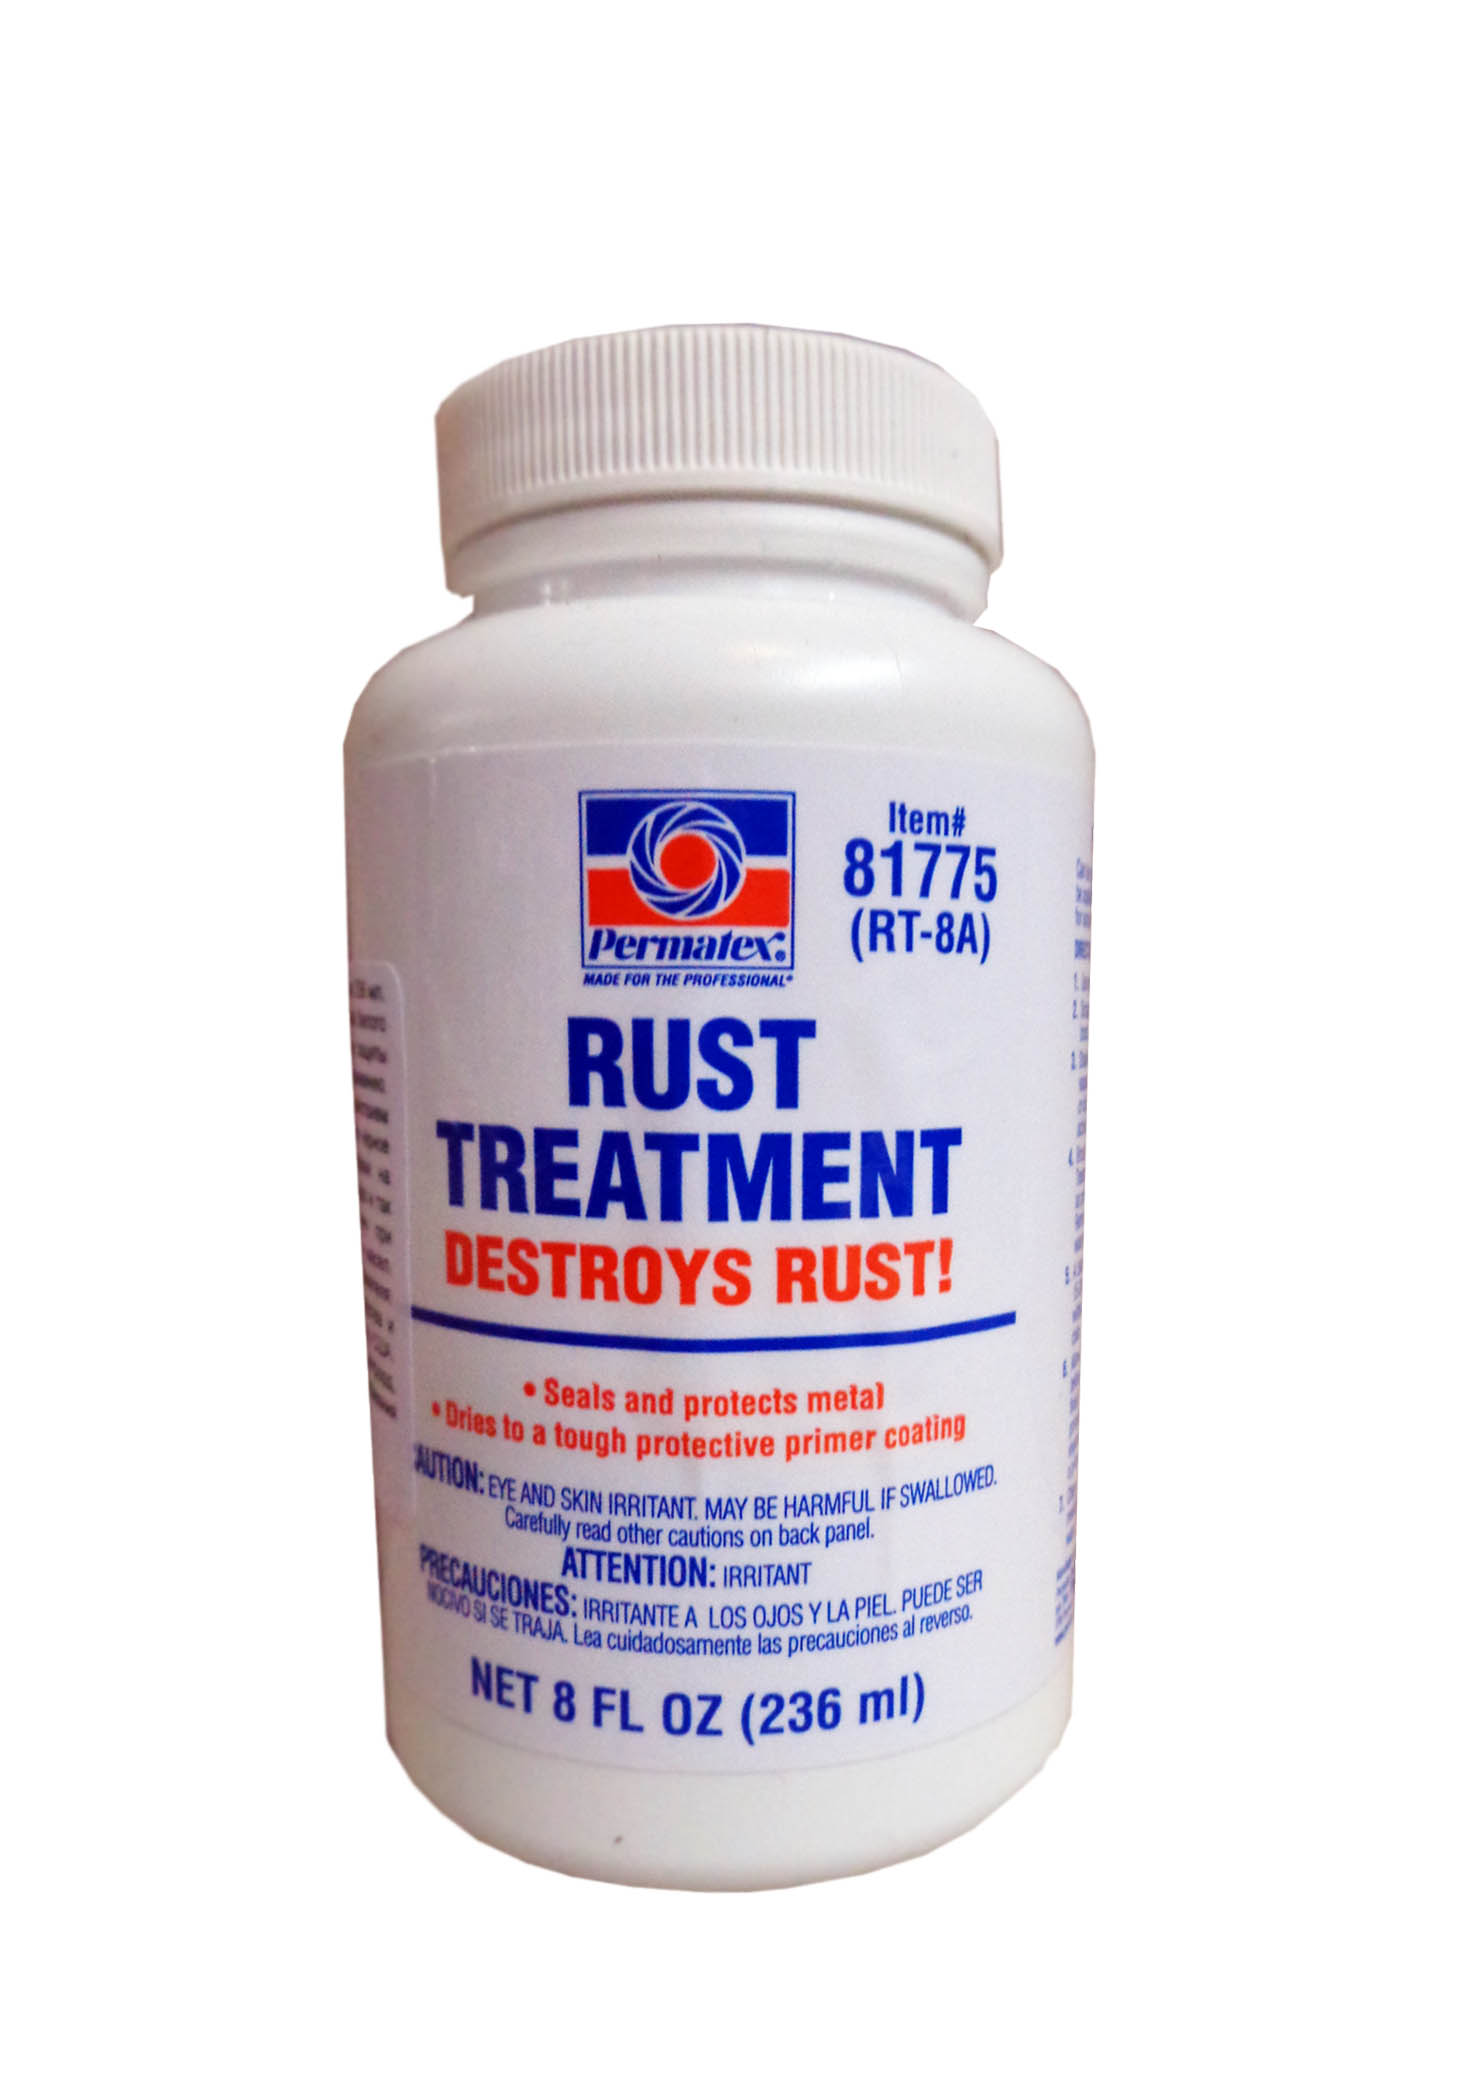 Permatex rust treatment 81775 инструкция по применению фото 5